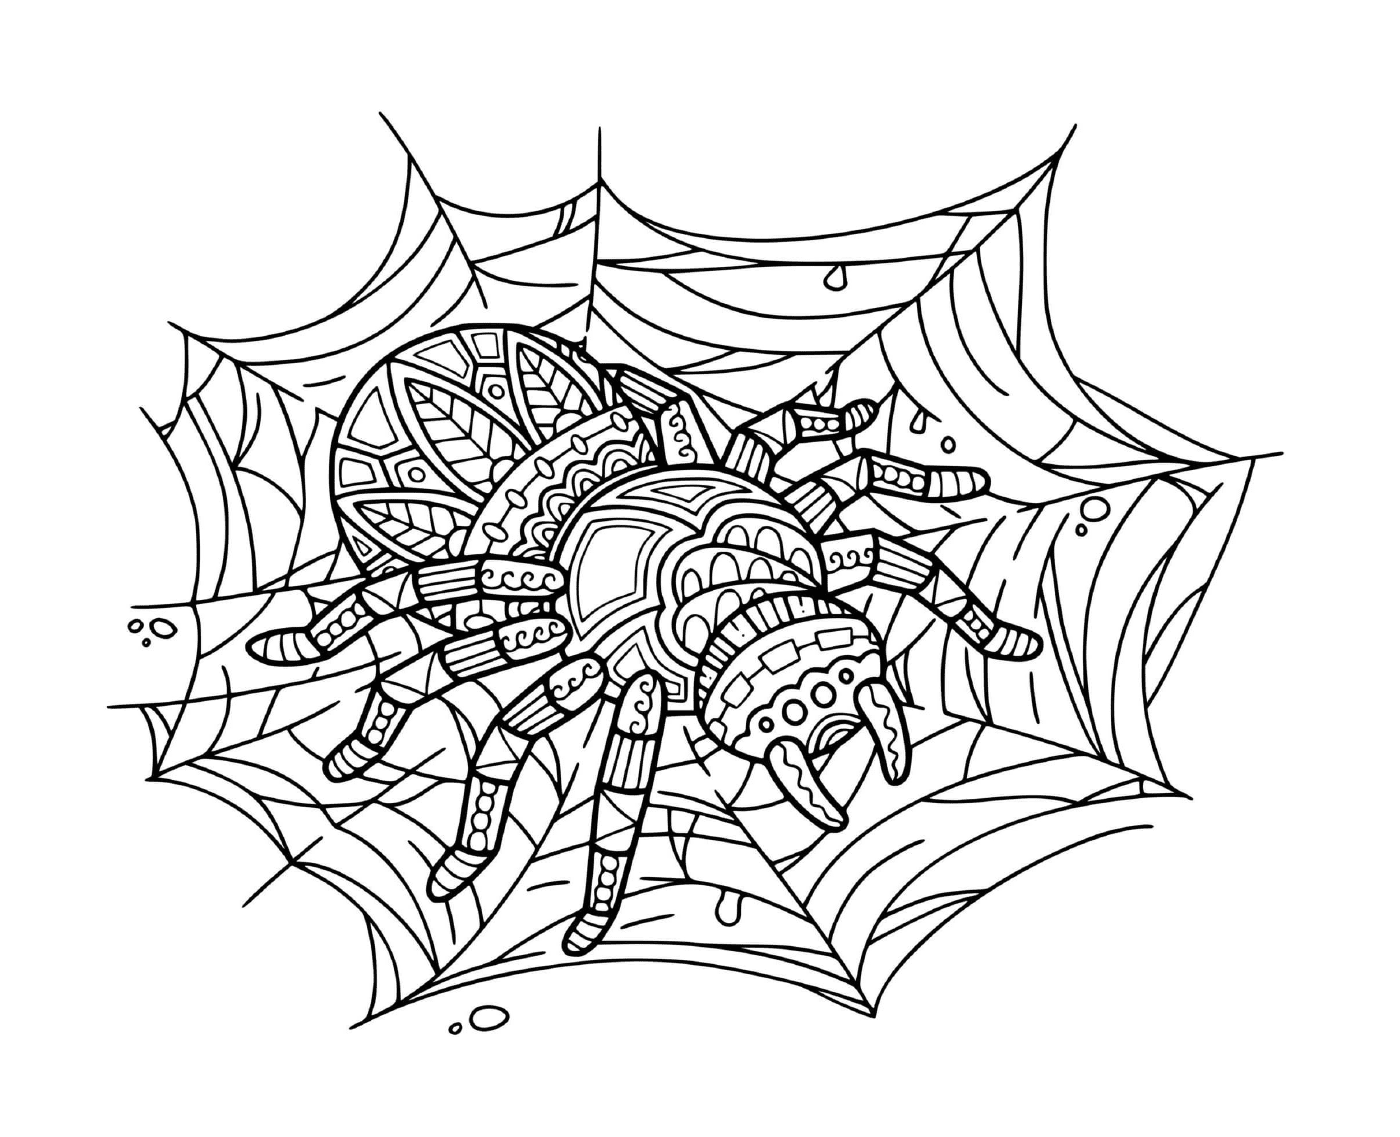  一只蜘蛛坐在曼达拉放松网上 